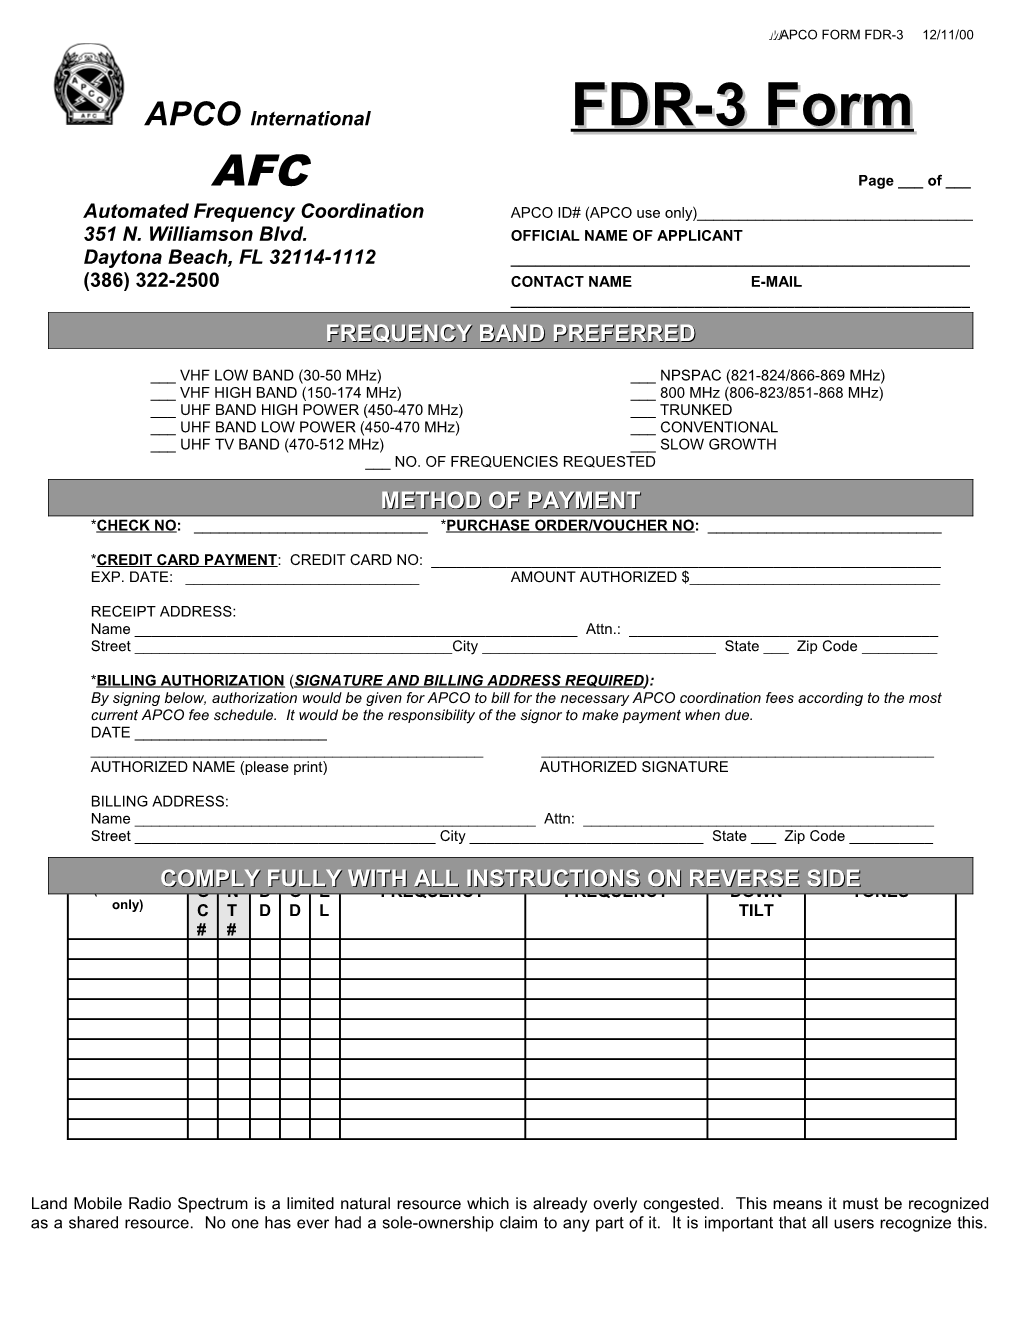 Apco Form Fdr-3 1/2000